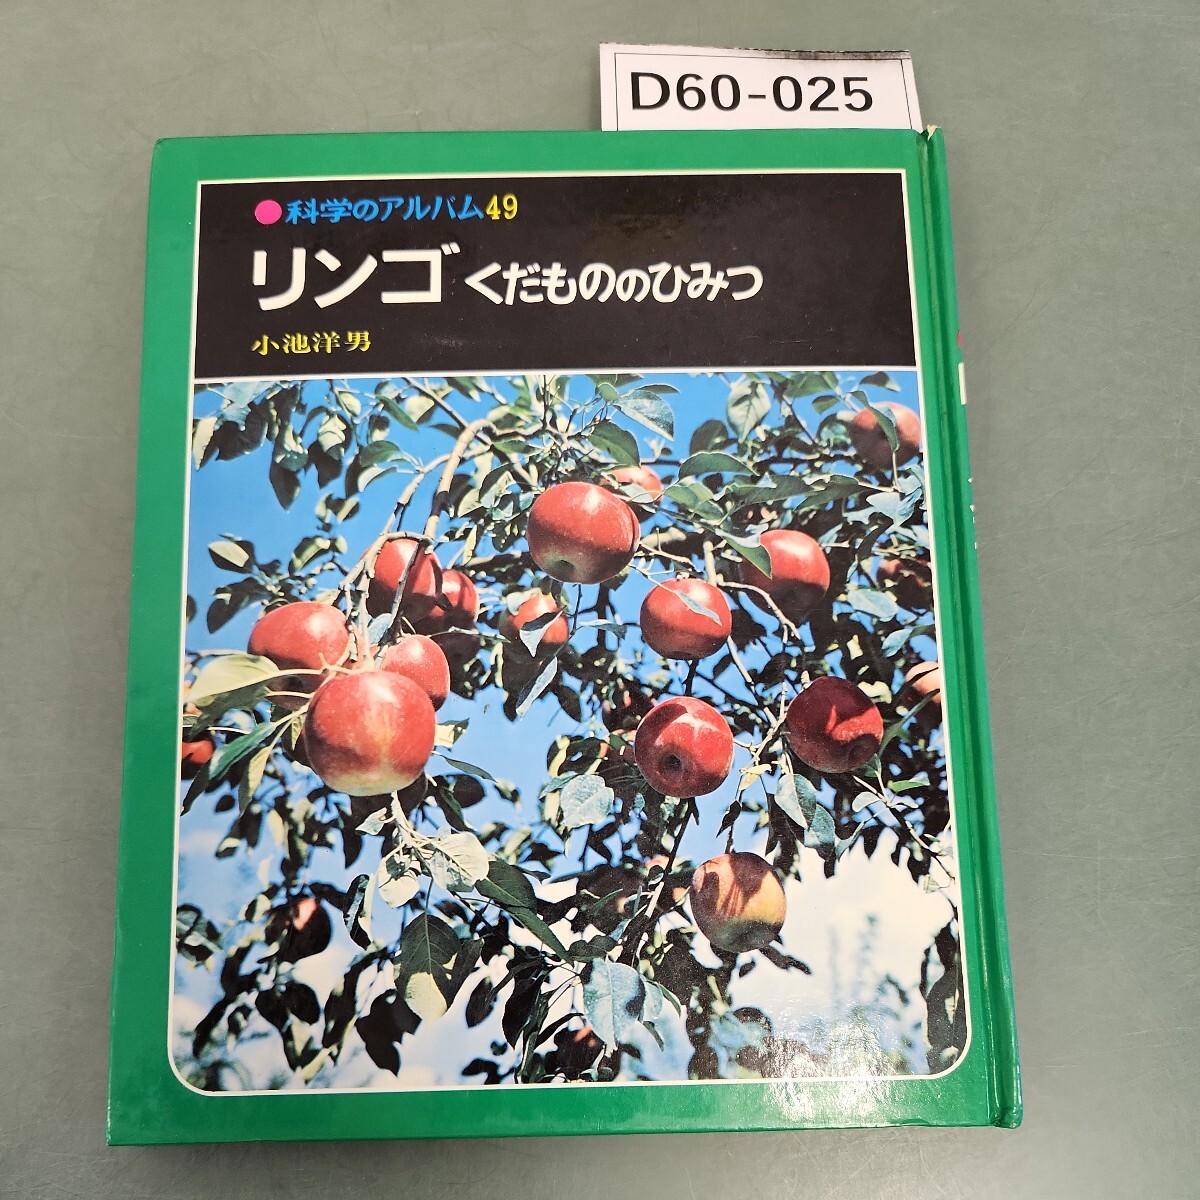 D60-025 科学のアルバム49 リンゴくだもののひみつ 小池洋男_画像1